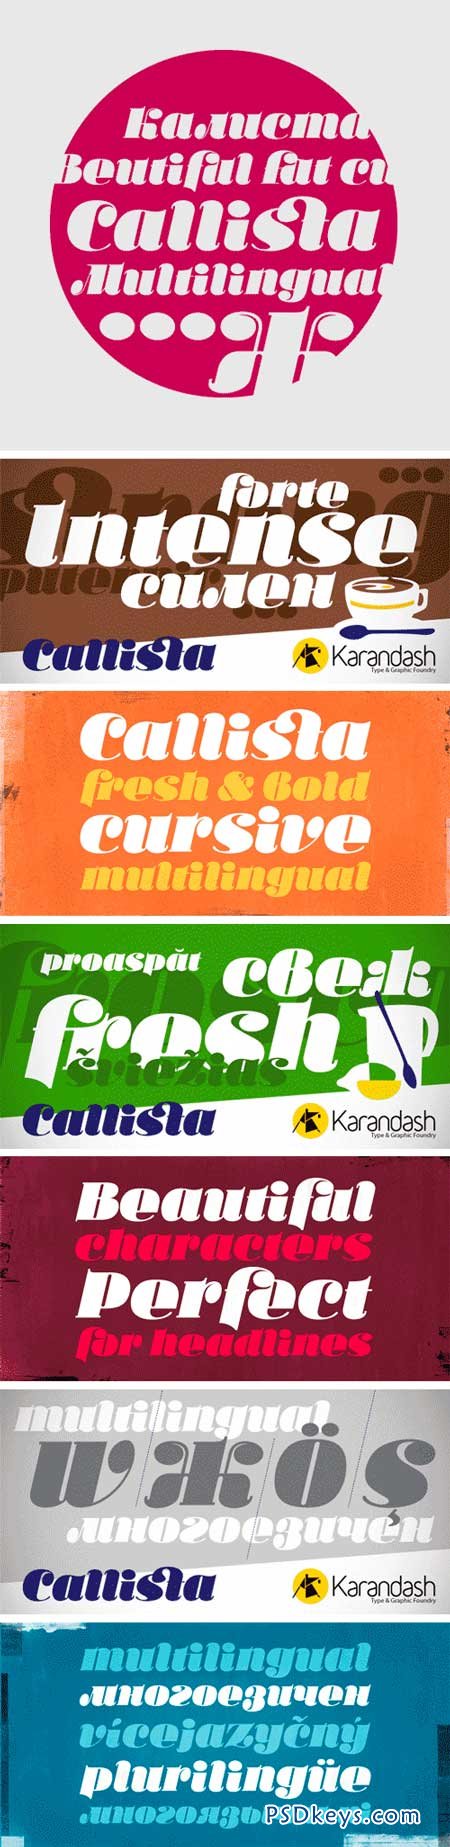 Ka Callista Font for $28